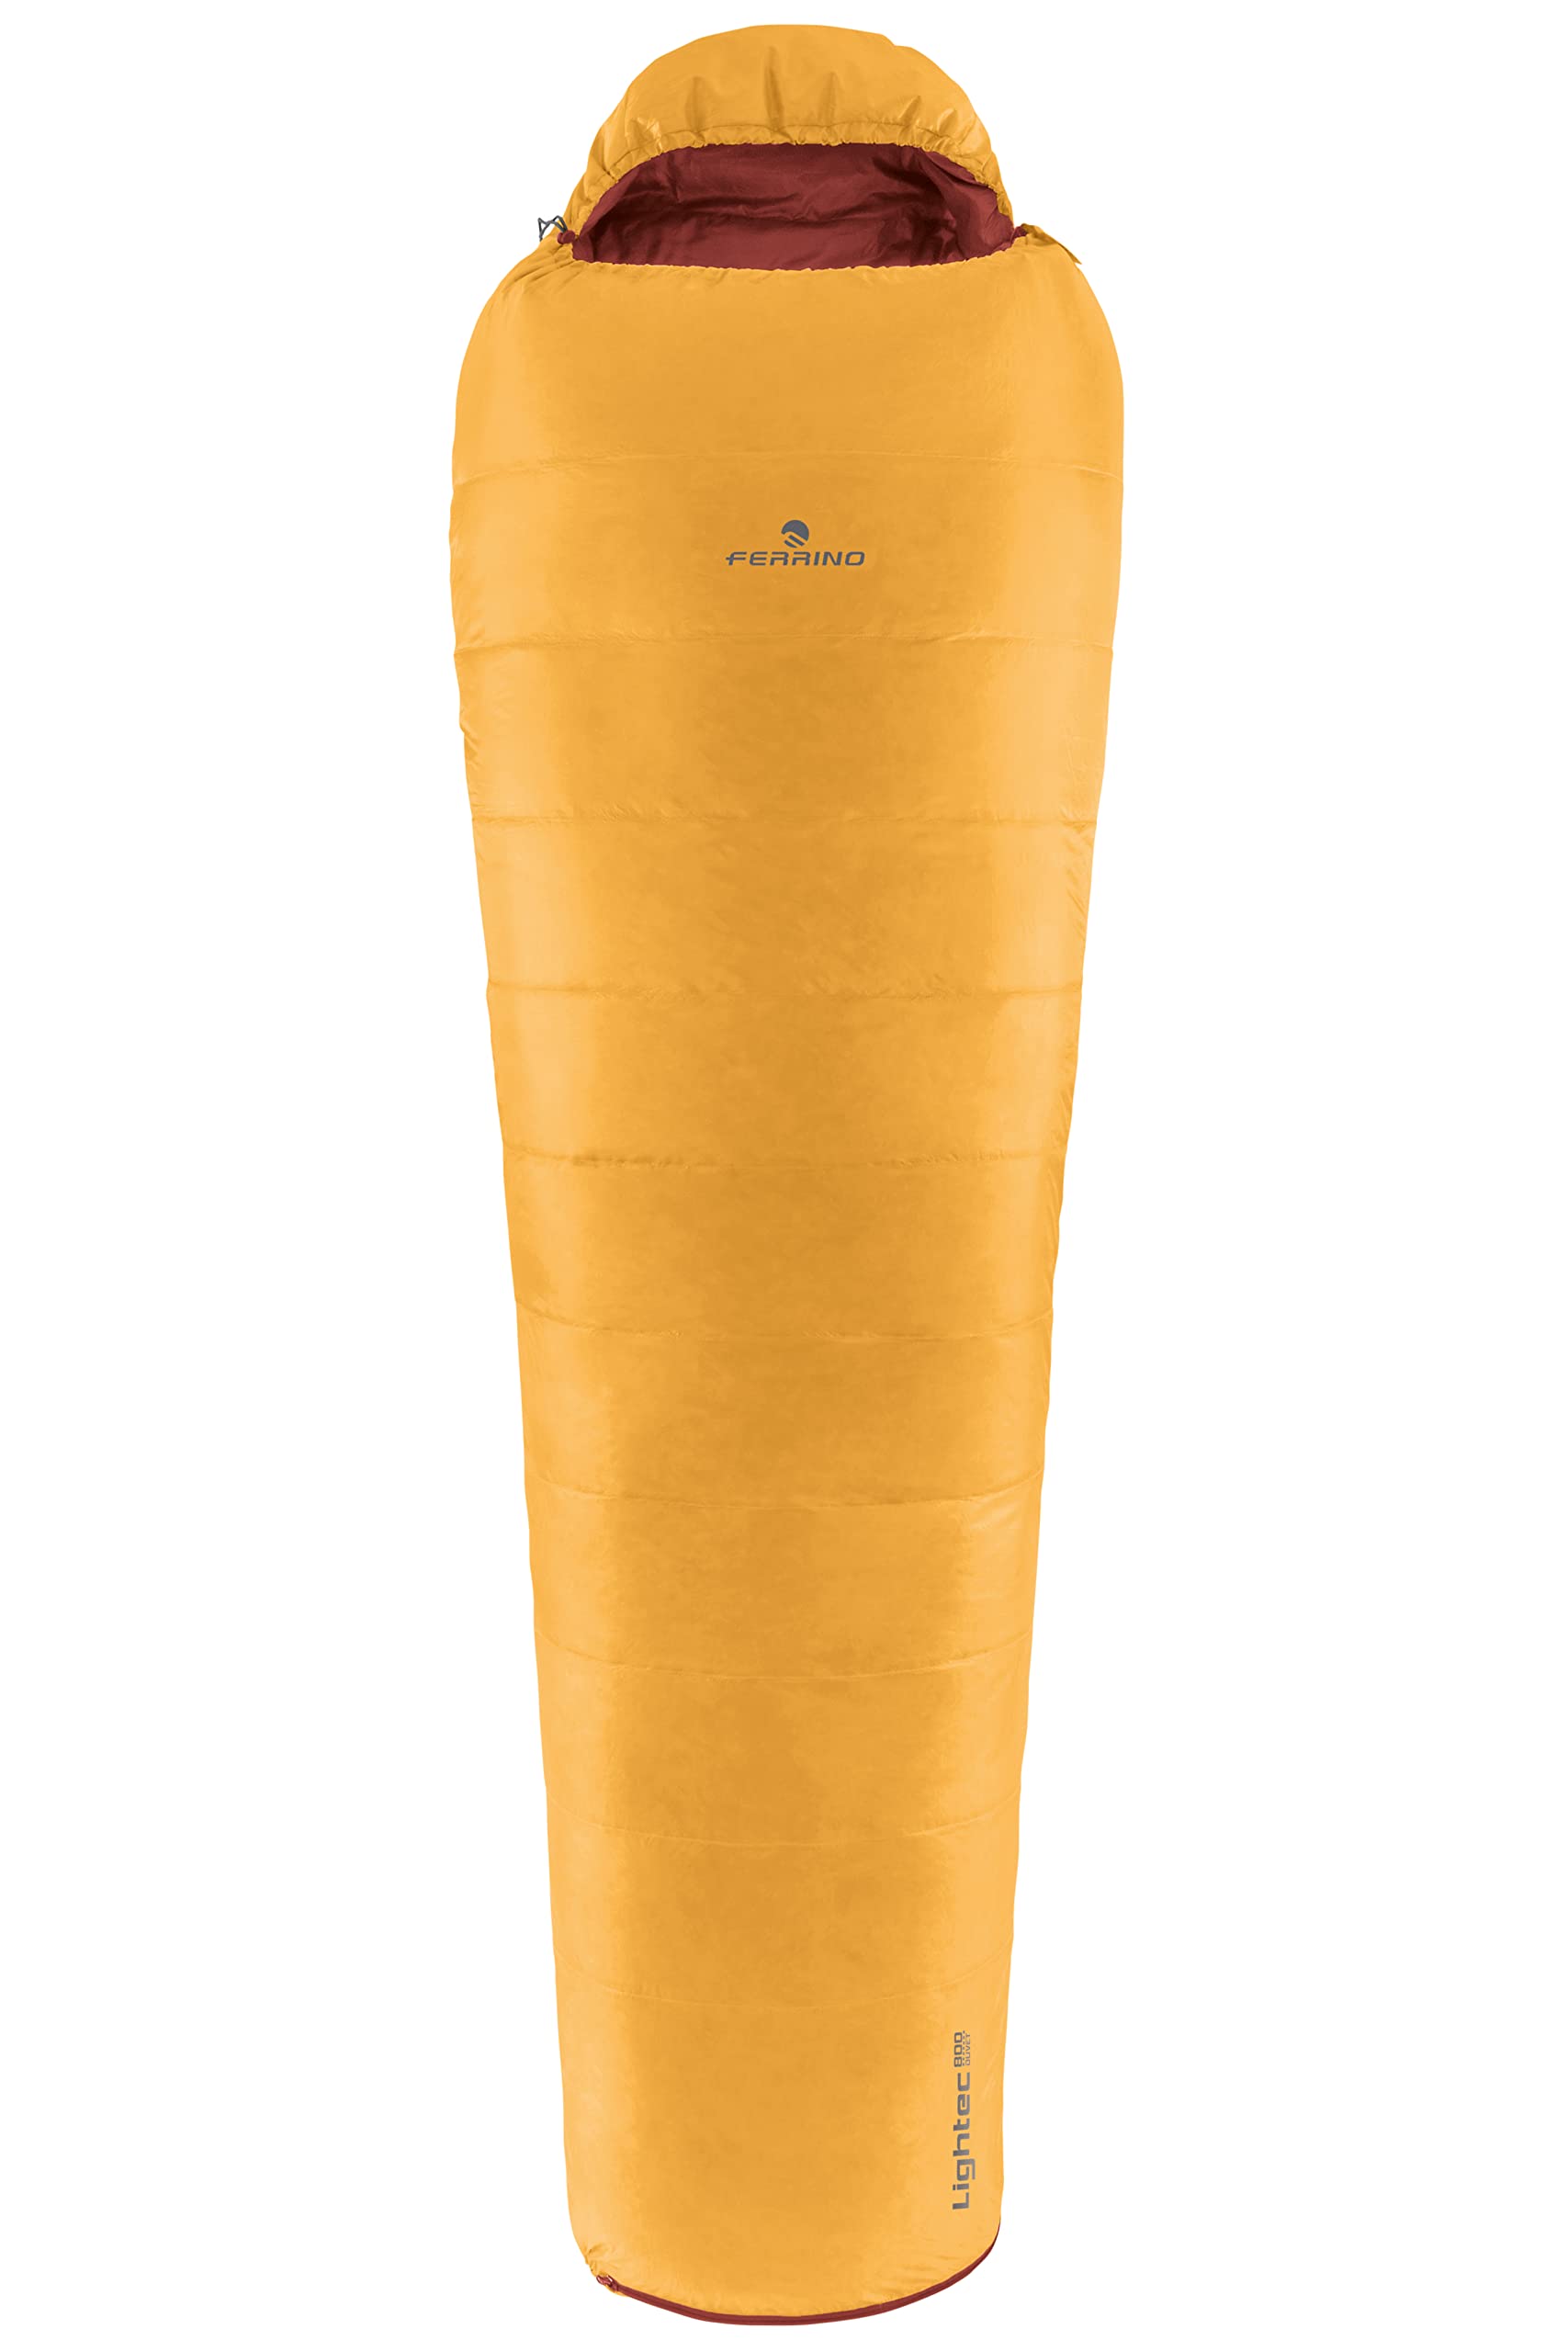 Ferrino Sleepingbag Lightech 800 Duvet RDS Down Schlafsack, Orange (Orange), Einheitsgröße